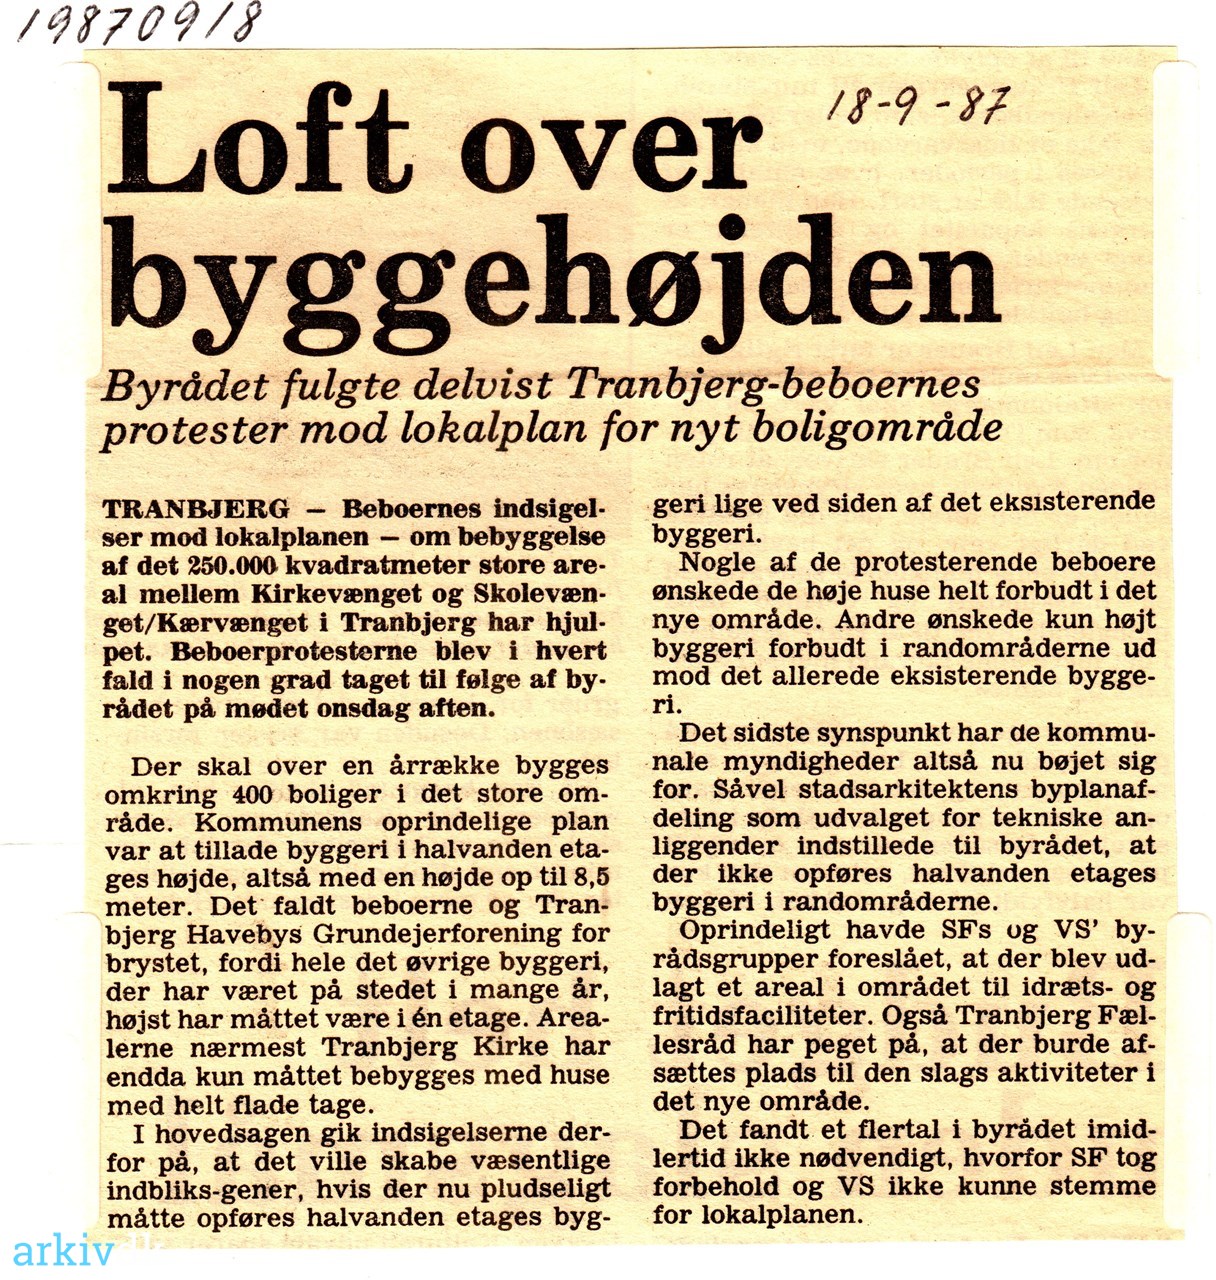 arkiv.dk | Loft over byggehøjden. 1987. Byrådet fulgte delvist Tranbjerg- beboernes protester lokalplan nyt boligområde